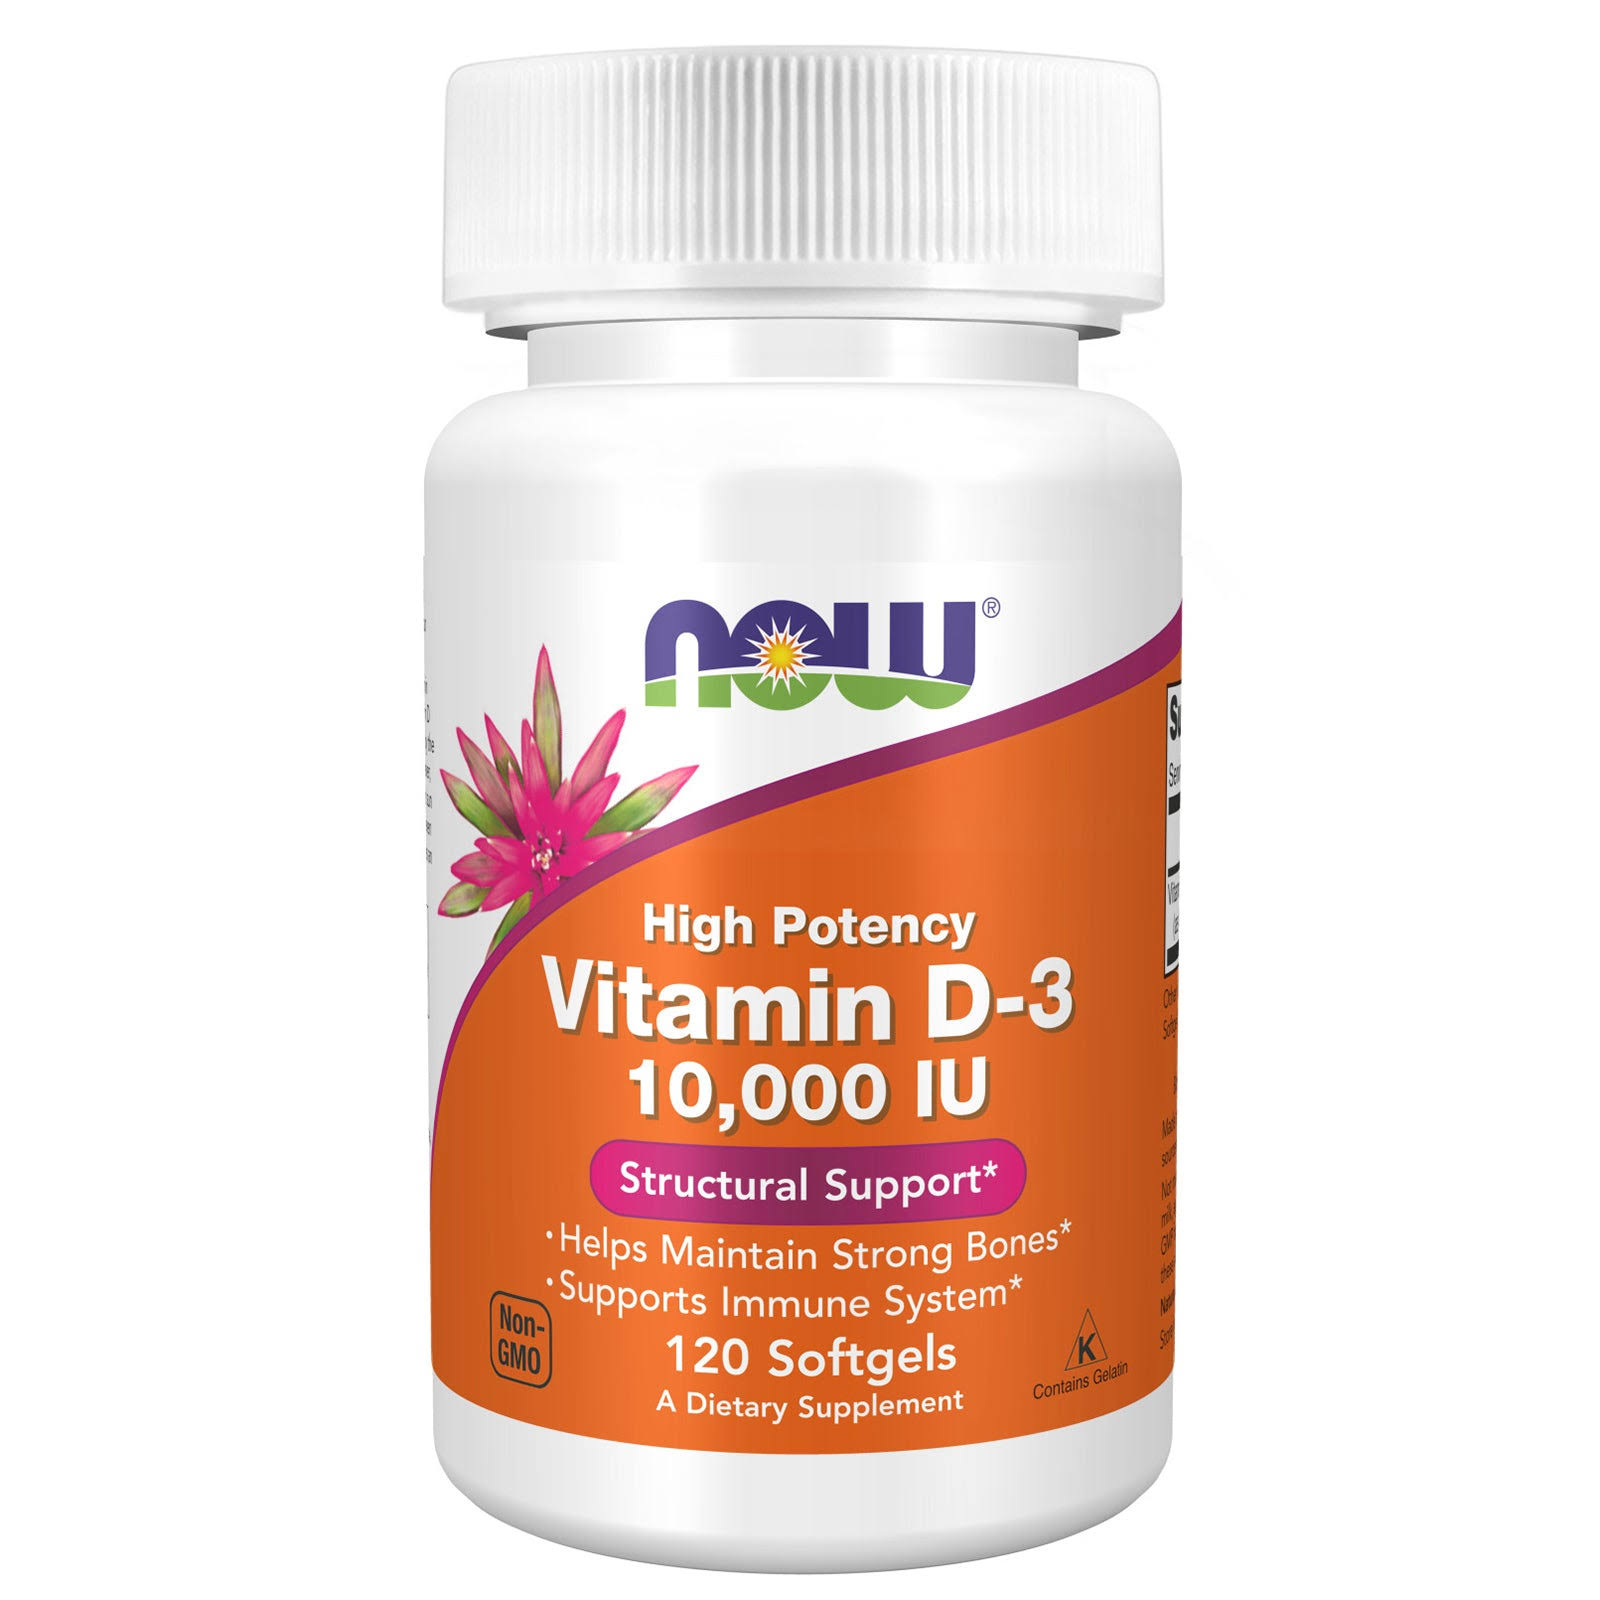 Now Foods Vitamin D-3 10,000 IU - 120 Softgels